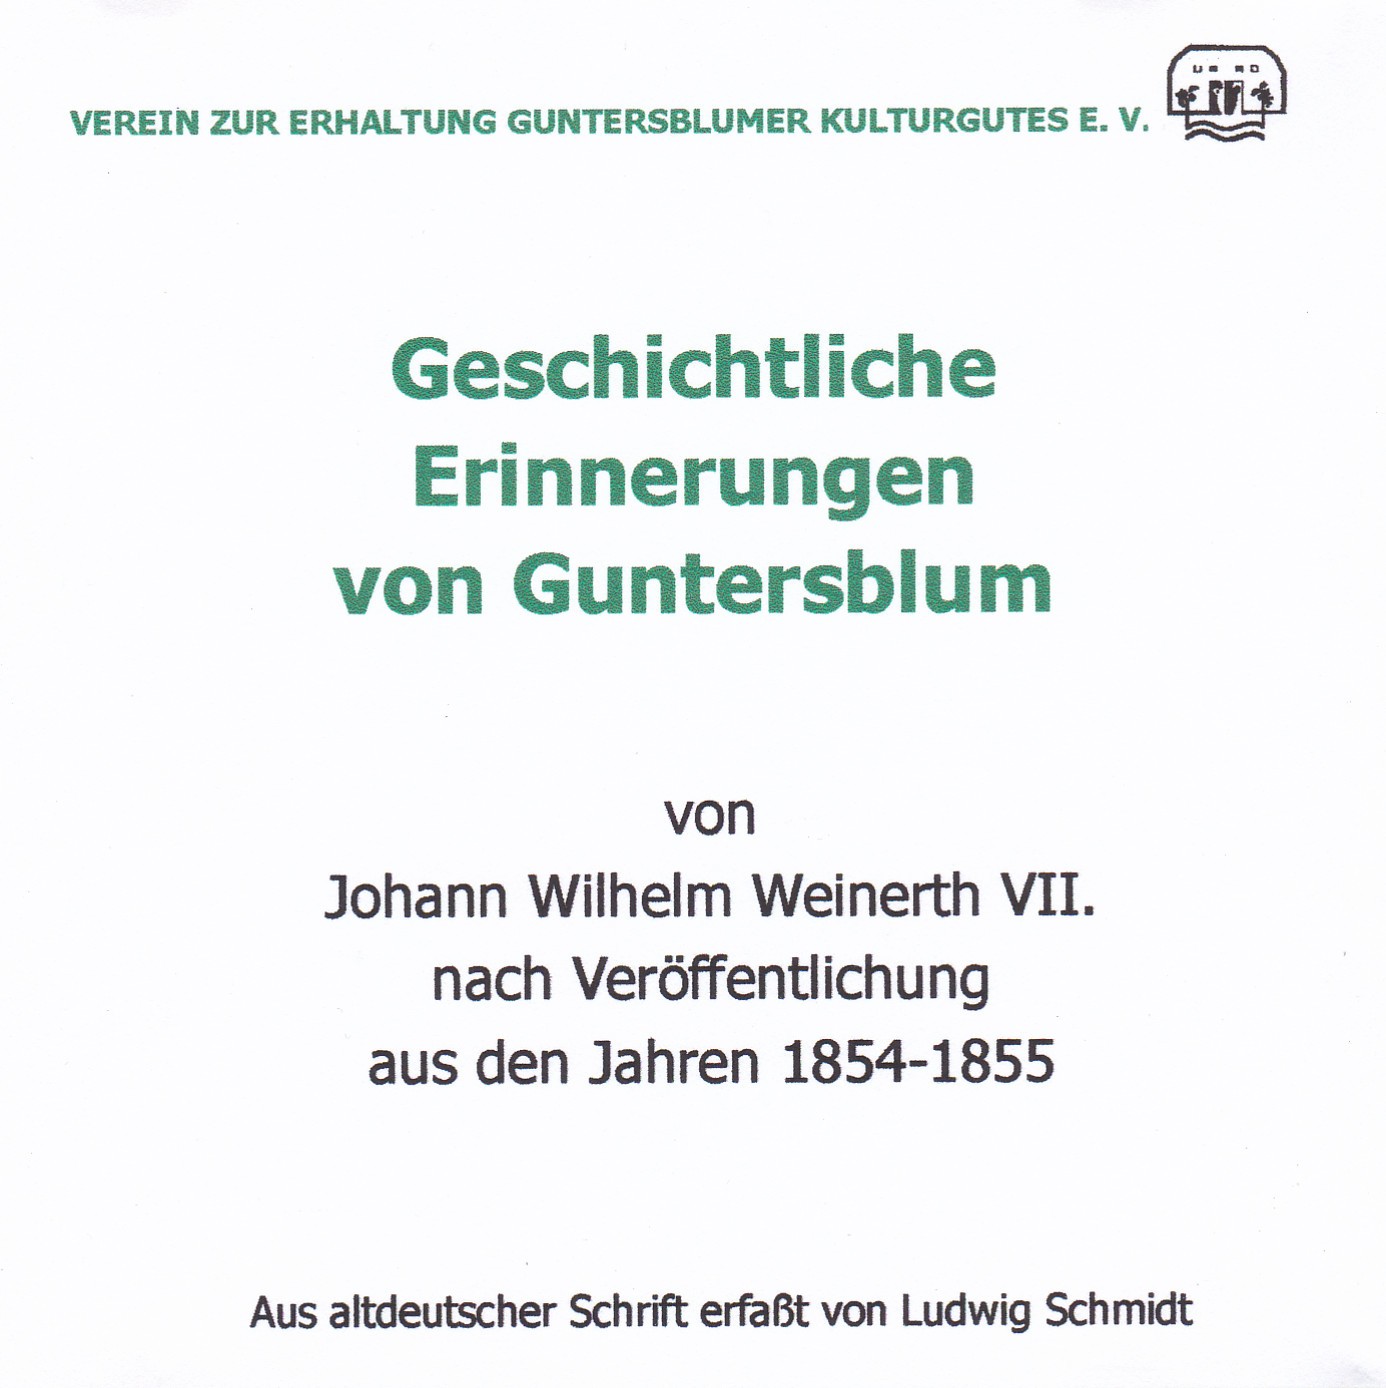 Geschichtliche Erinnerungen von Guntersblum 1798-1814)von Johann Wilhelm Weinerth VII (Museum Guntersblum  im Kellerweg 20 CC BY-NC-SA)